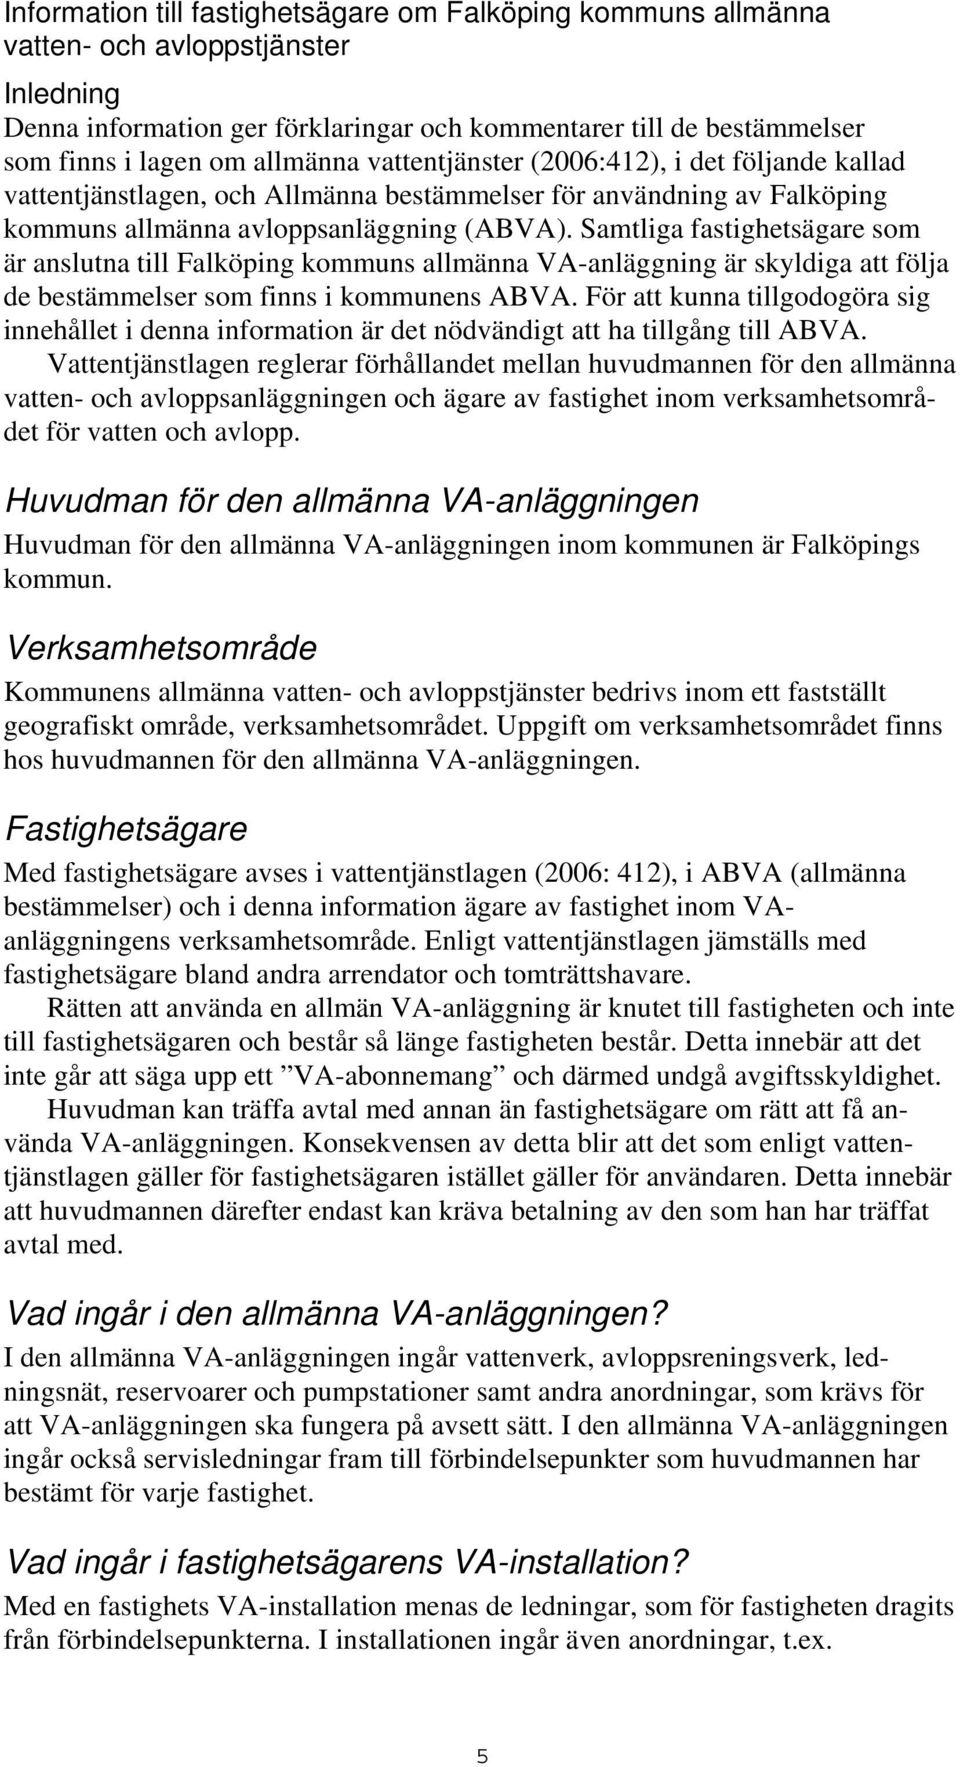 Samtliga fastighetsägare som är anslutna till Falköping kommuns allmänna VA-anläggning är skyldiga att följa de bestämmelser som finns i kommunens ABVA.